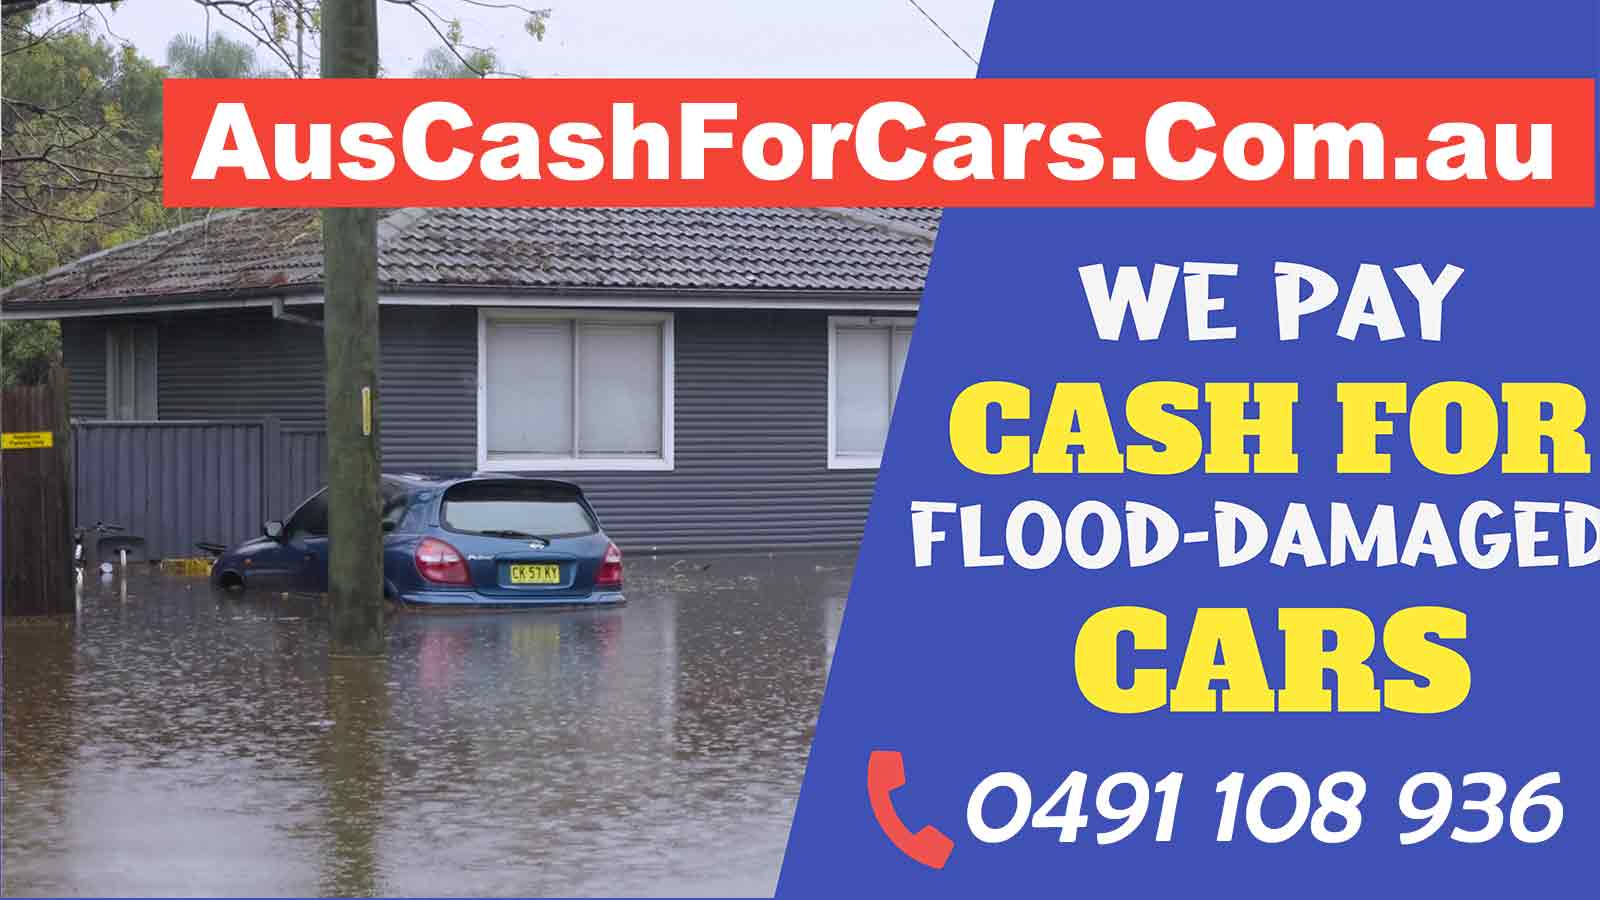 Flood Damaged Cars in QLD